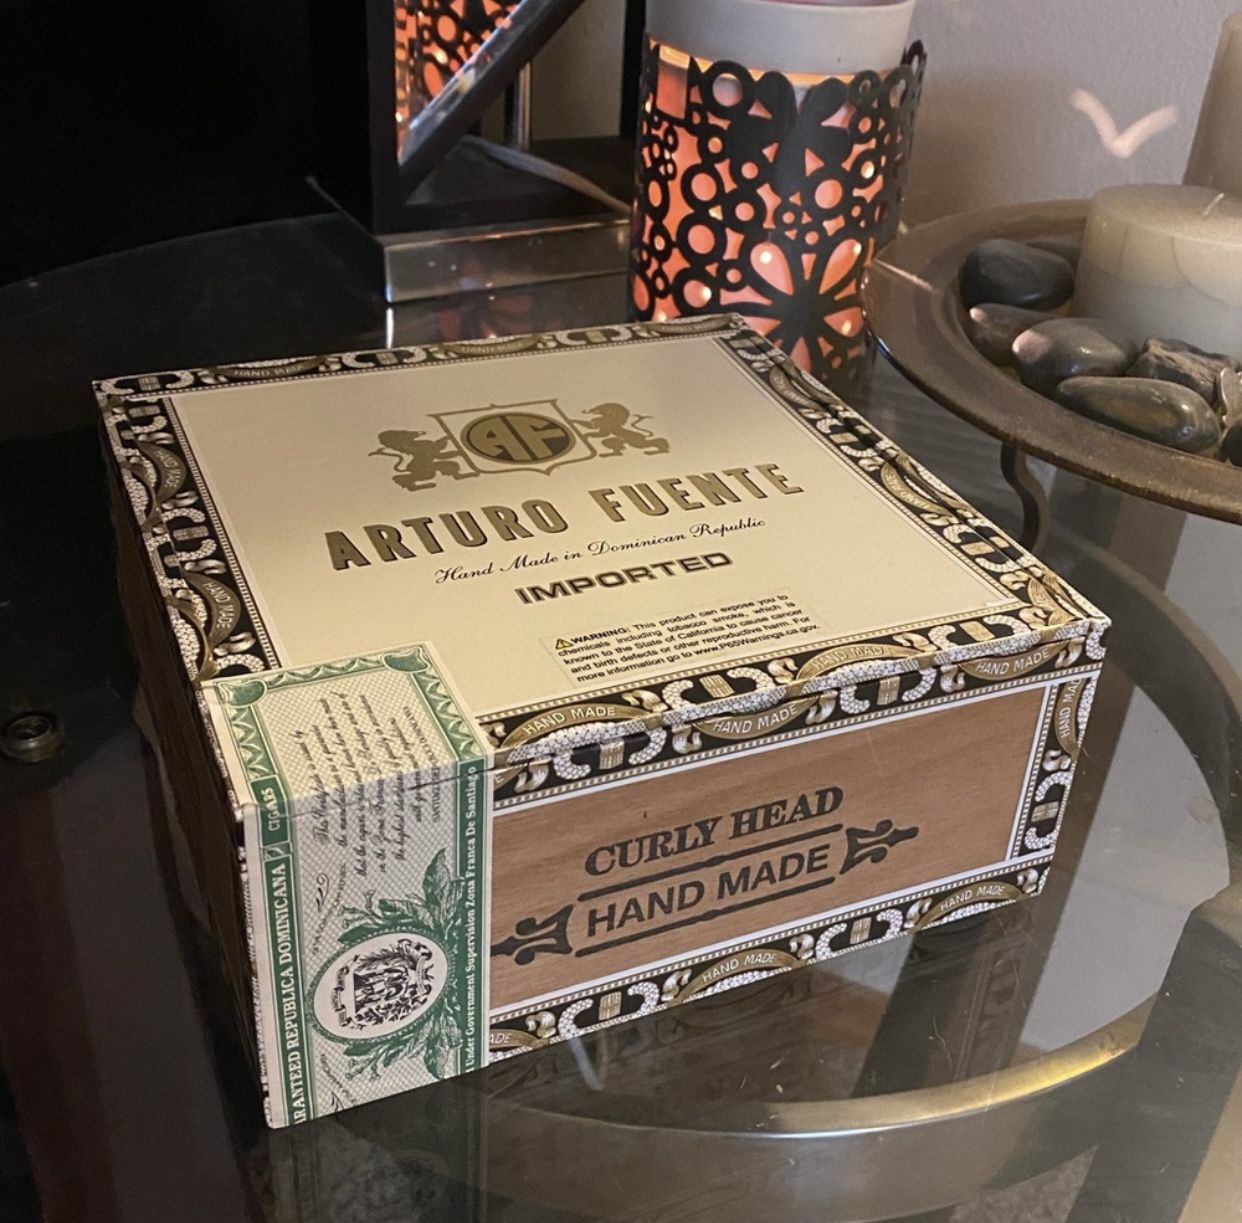 Arturo Fuente Cedar Cigar Box